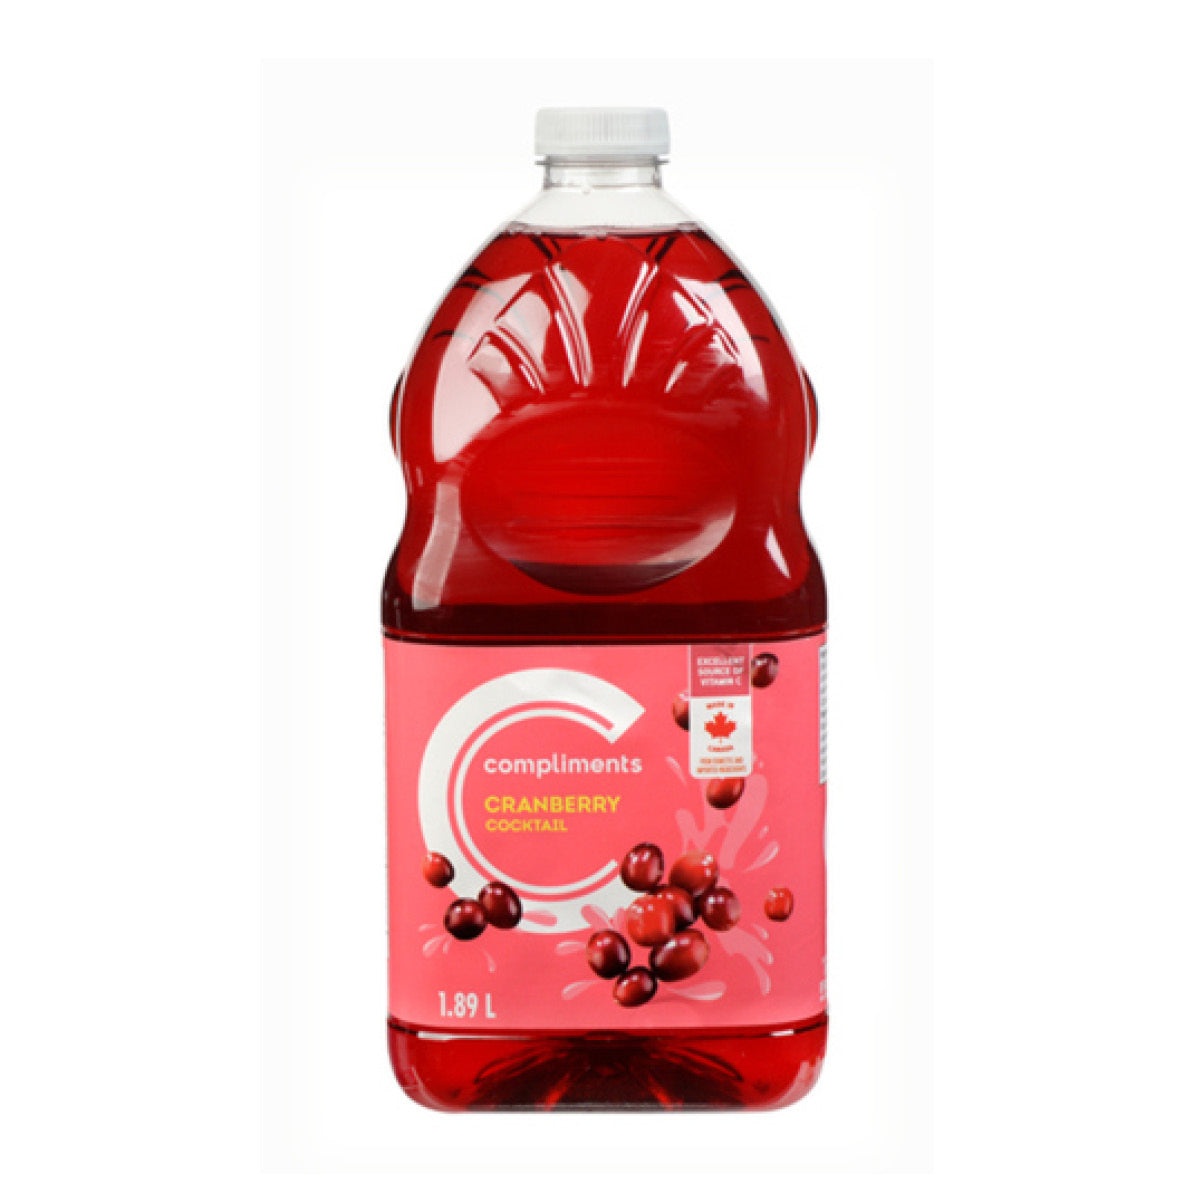 Compliments Cranberry Cocktail Juice, 1.89L